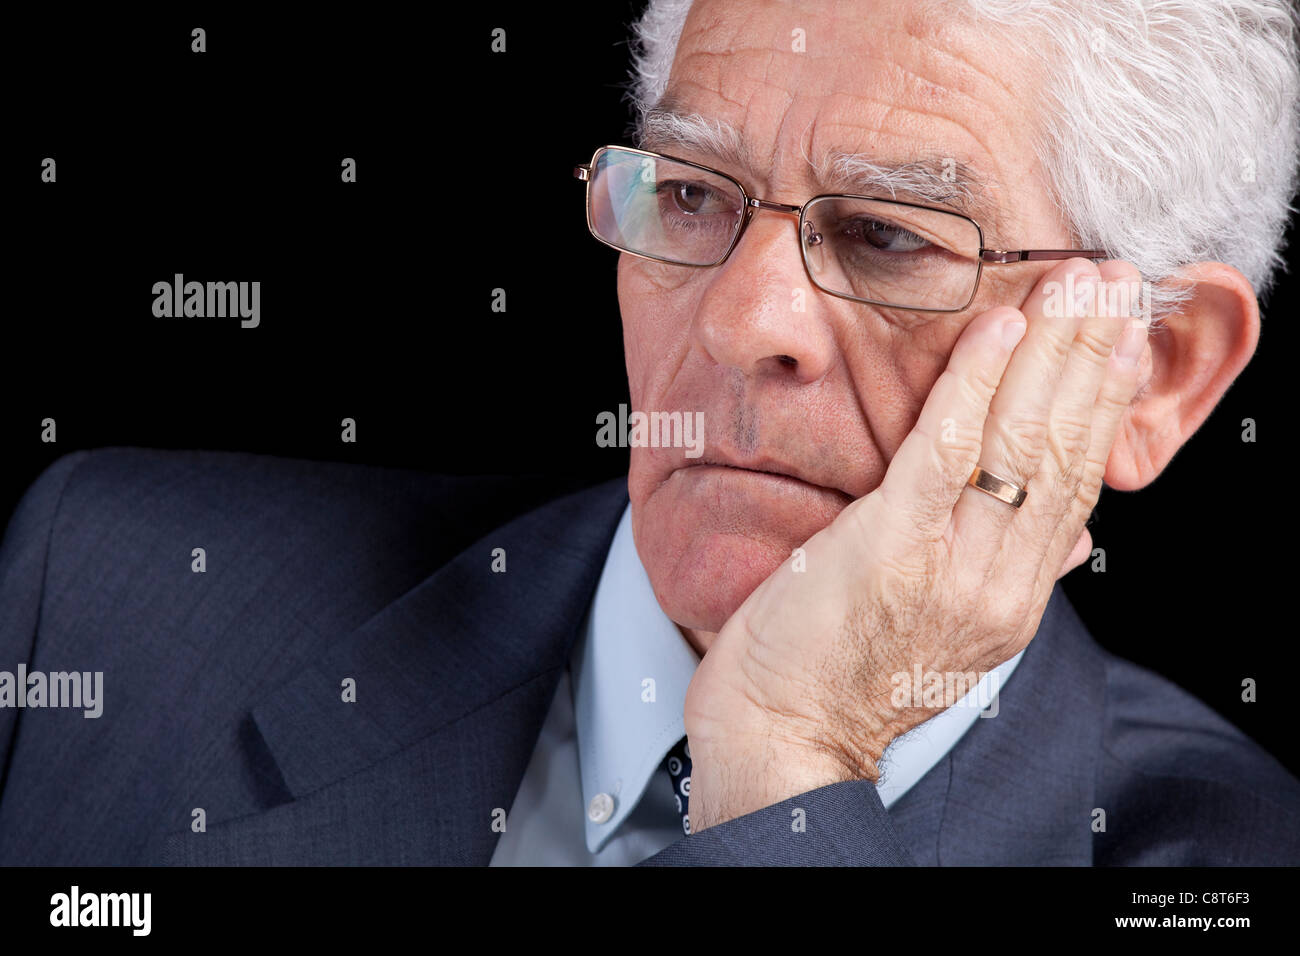 Senior businessman thinking avec sa main au menton (isolé sur fond noir) Banque D'Images